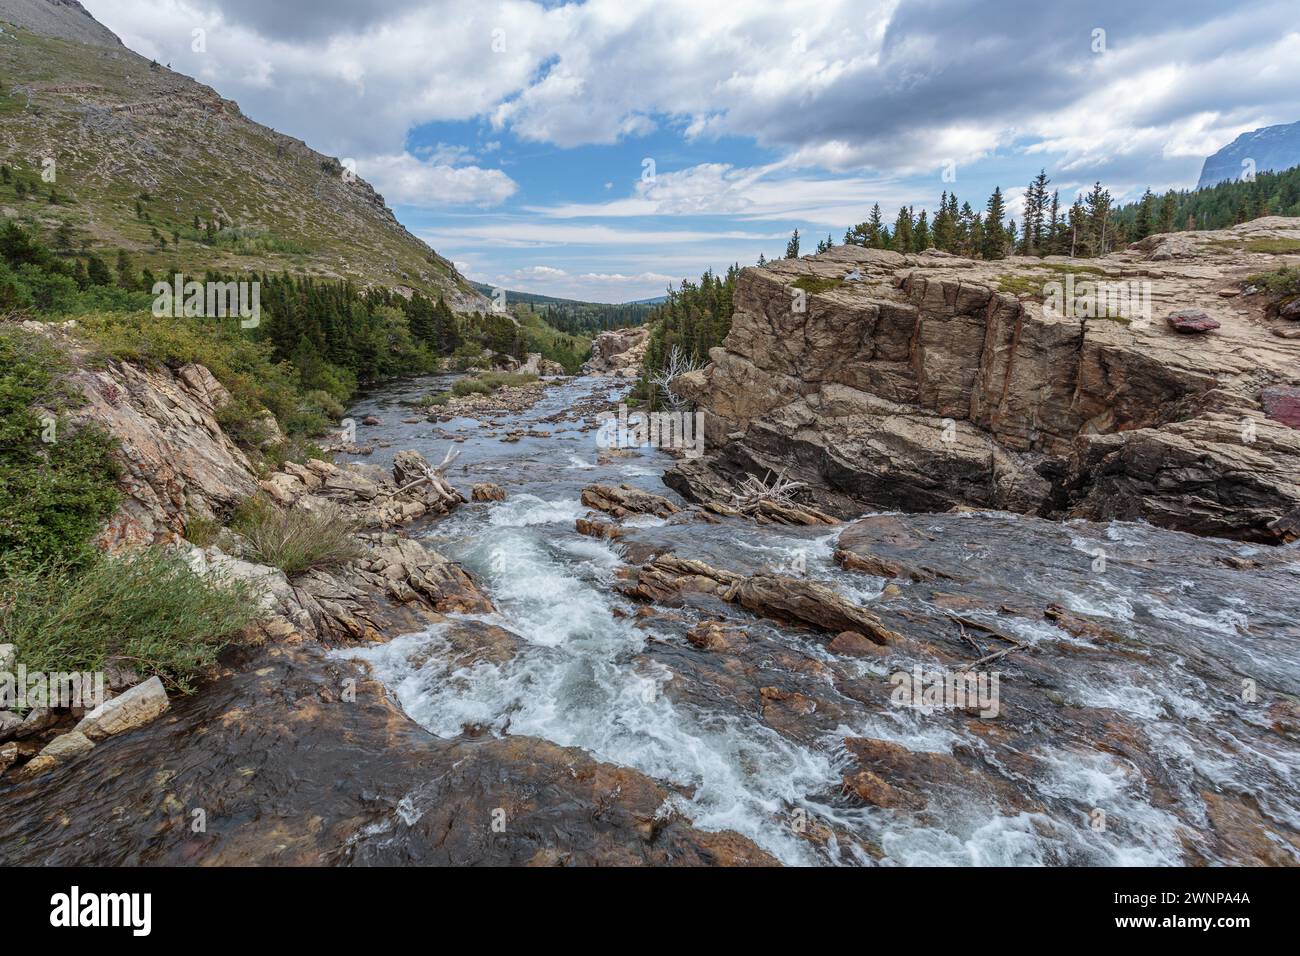 Le ruisseau SwiftCurrent s'écoule à travers un terrain rocheux dans la région des nombreux glaciers du parc national des glaciers dans le Montana Banque D'Images